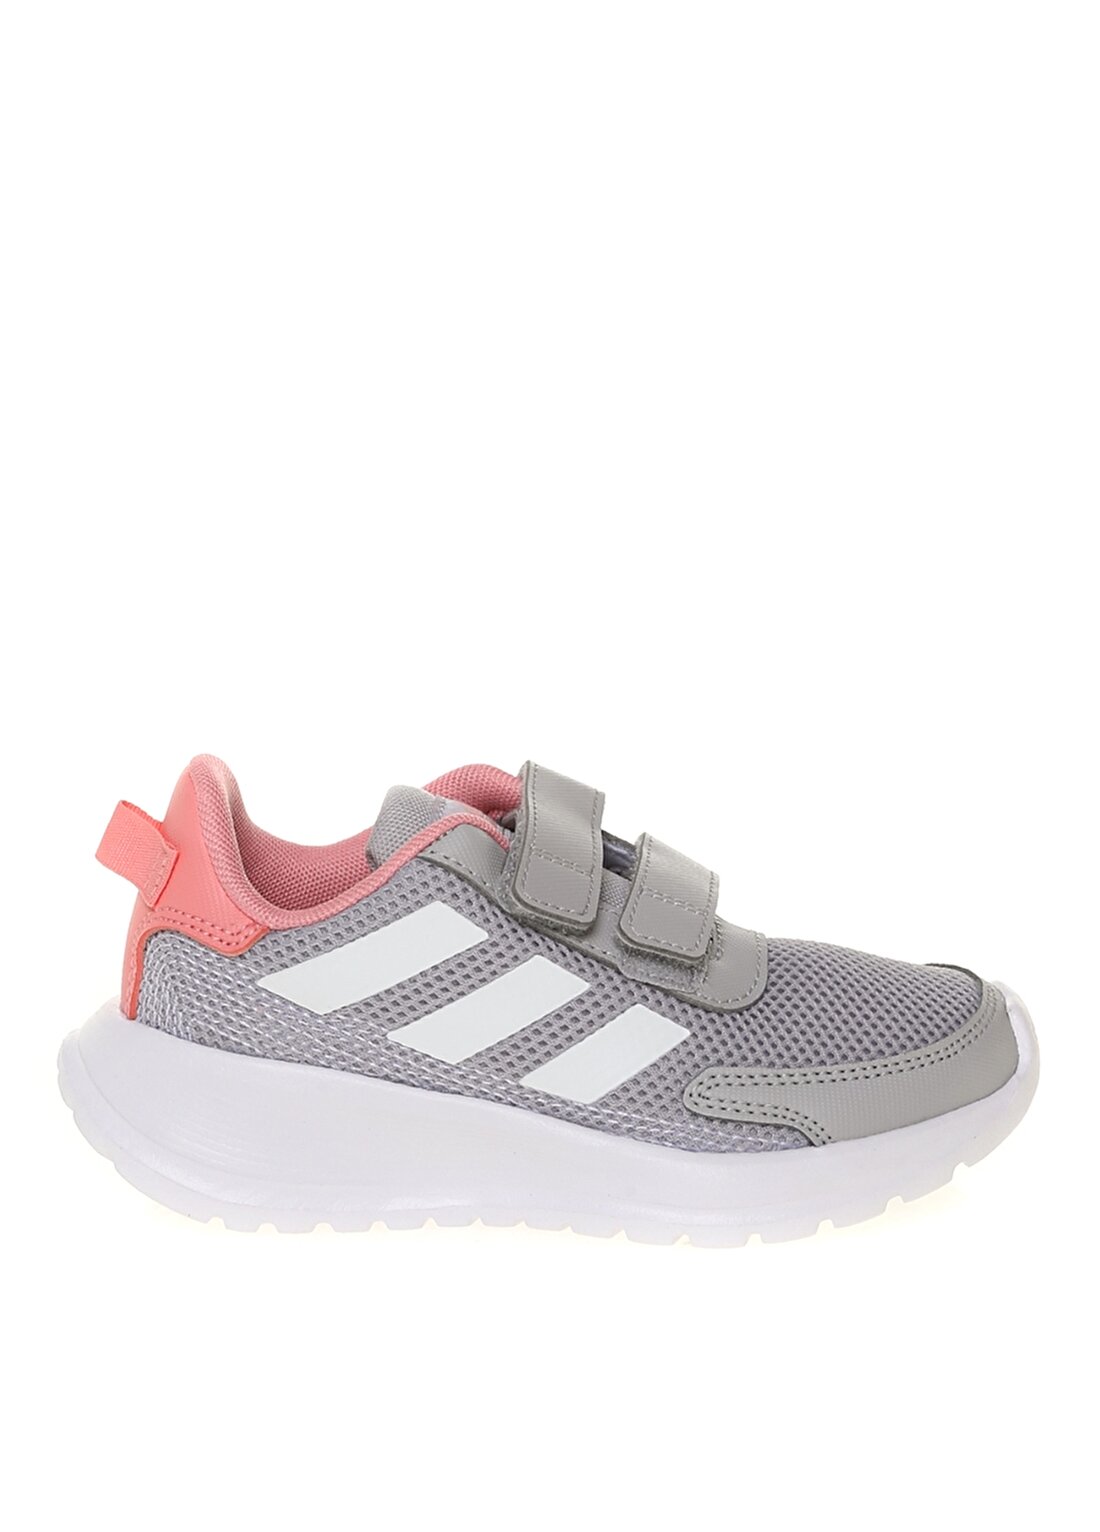 Adidas Tensaur Run C Gri - Beyaz - Pembe Kız Çocuk Yürüyüş Ayakkabısı